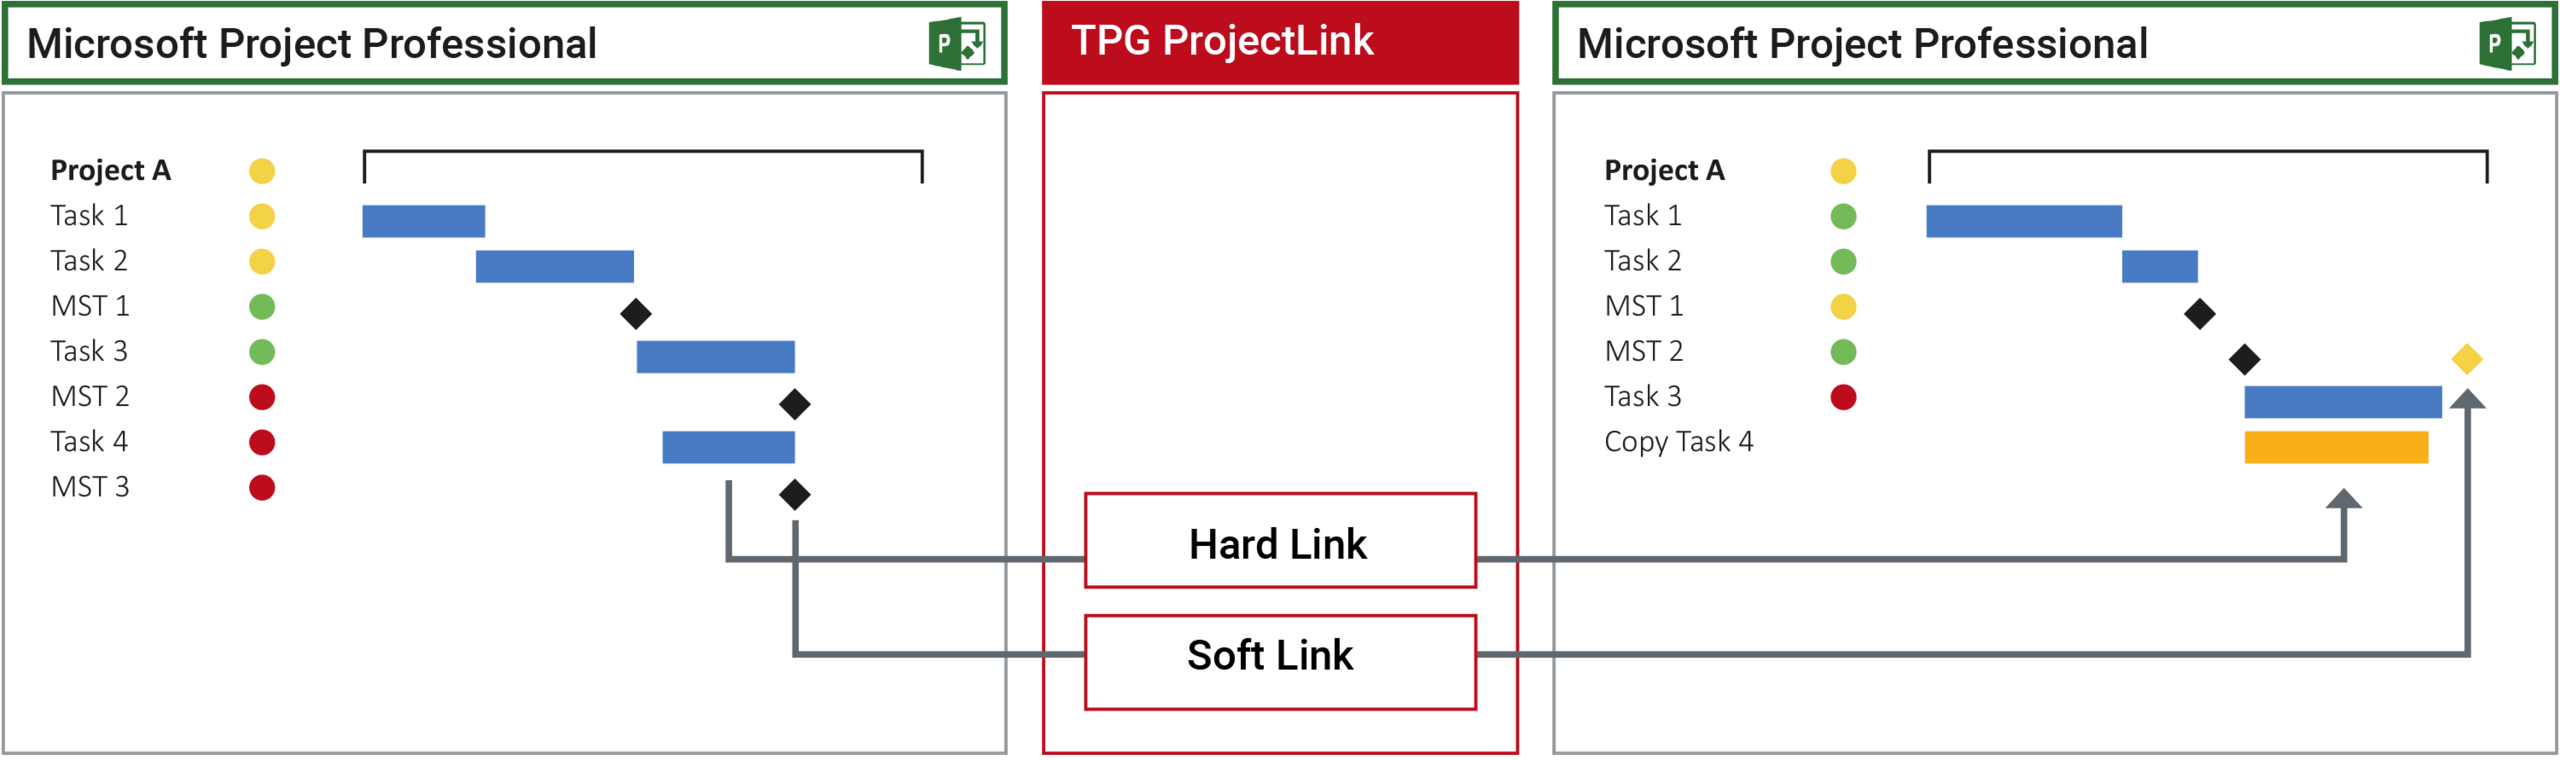 Soft Link ir Hard Link užduočių sąsaja tarp skirtingų projektų